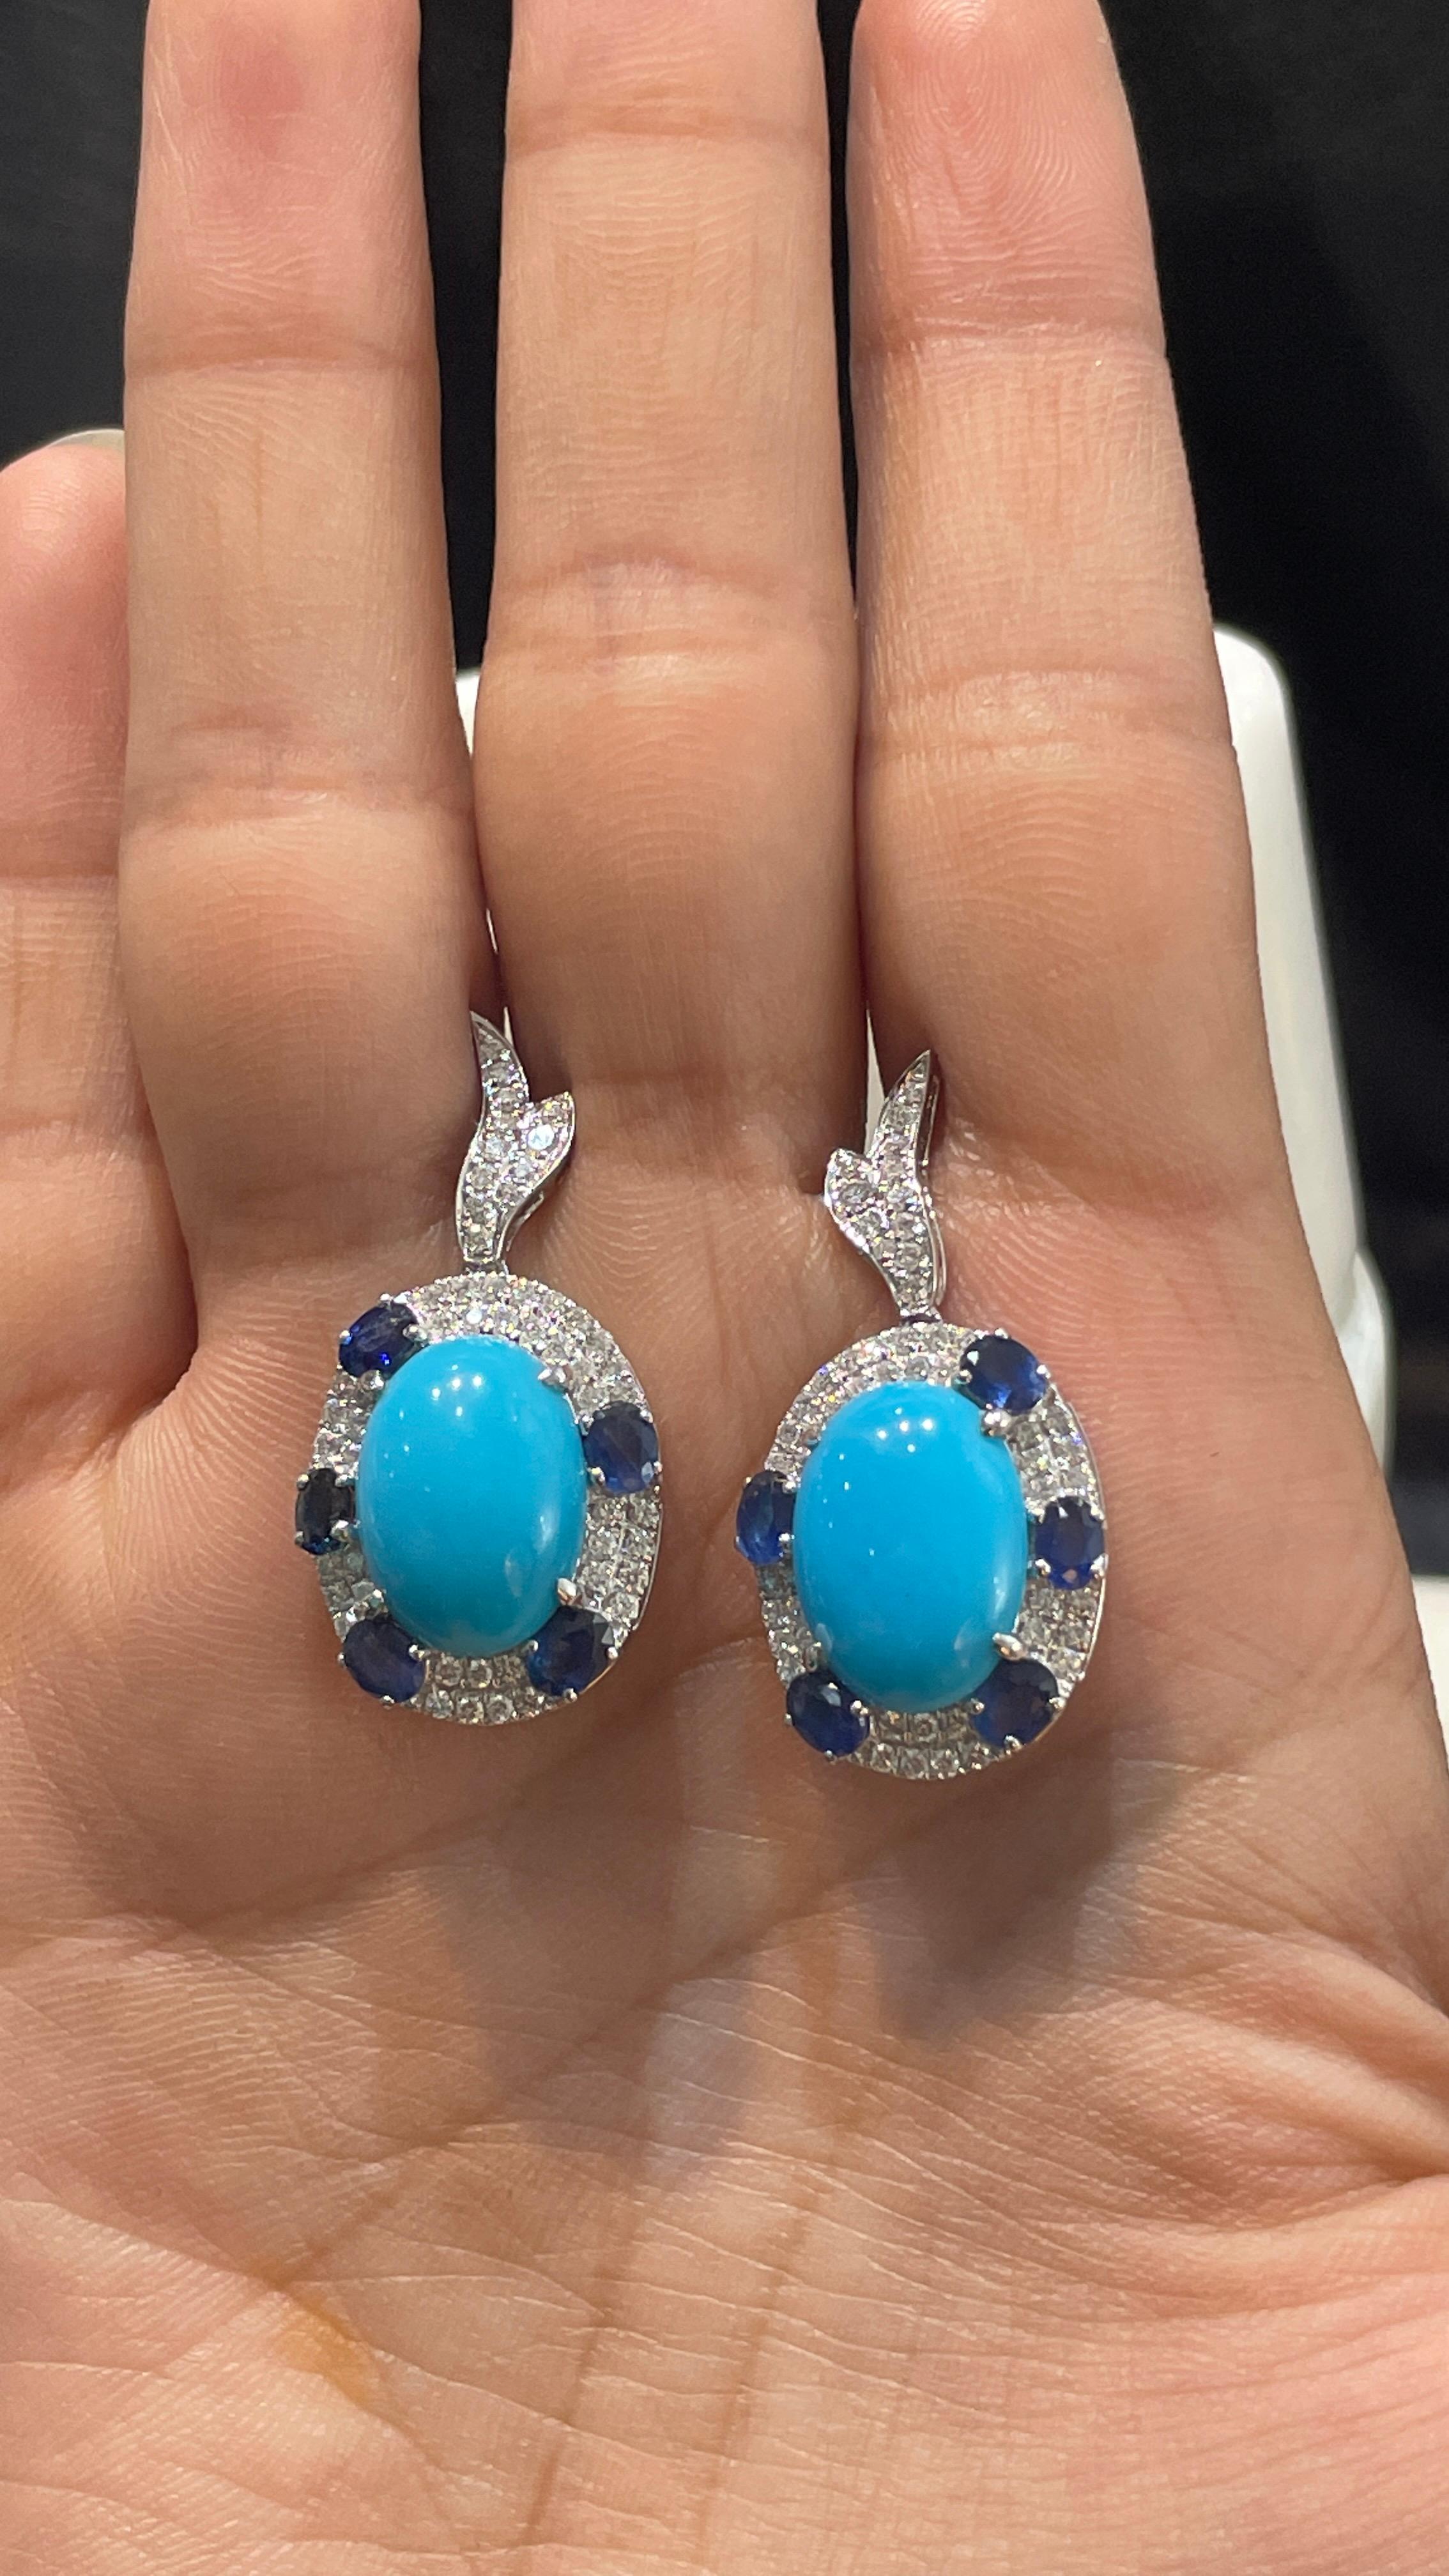 Blaue Saphir- und Türkis-Tropfenohrringe, die Ihren Look unterstreichen. Diese Ohrringe mit ovalem Schliff sorgen für einen funkelnden, luxuriösen Look.
Wenn Sie einen Hang zu einzigartigen Stilen haben, ist dieses Schmuckstück genau das Richtige